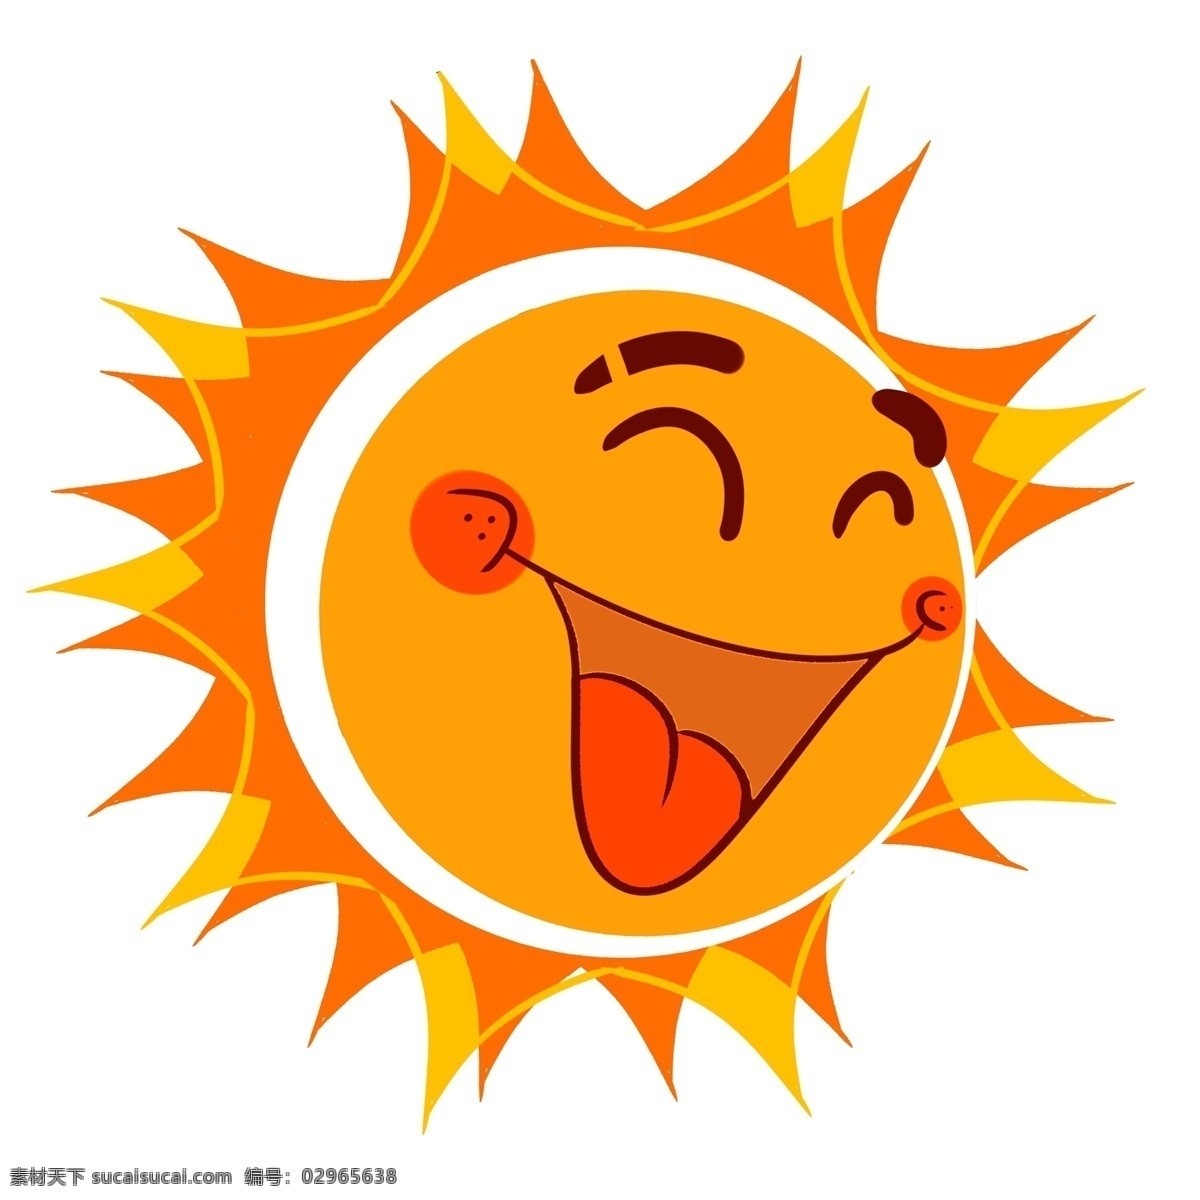 开心 笑脸 太阳 插画 圆圆的太阳 开心的太阳 卡通插画 笑脸插画 微笑插画 愉快插画 高兴插画